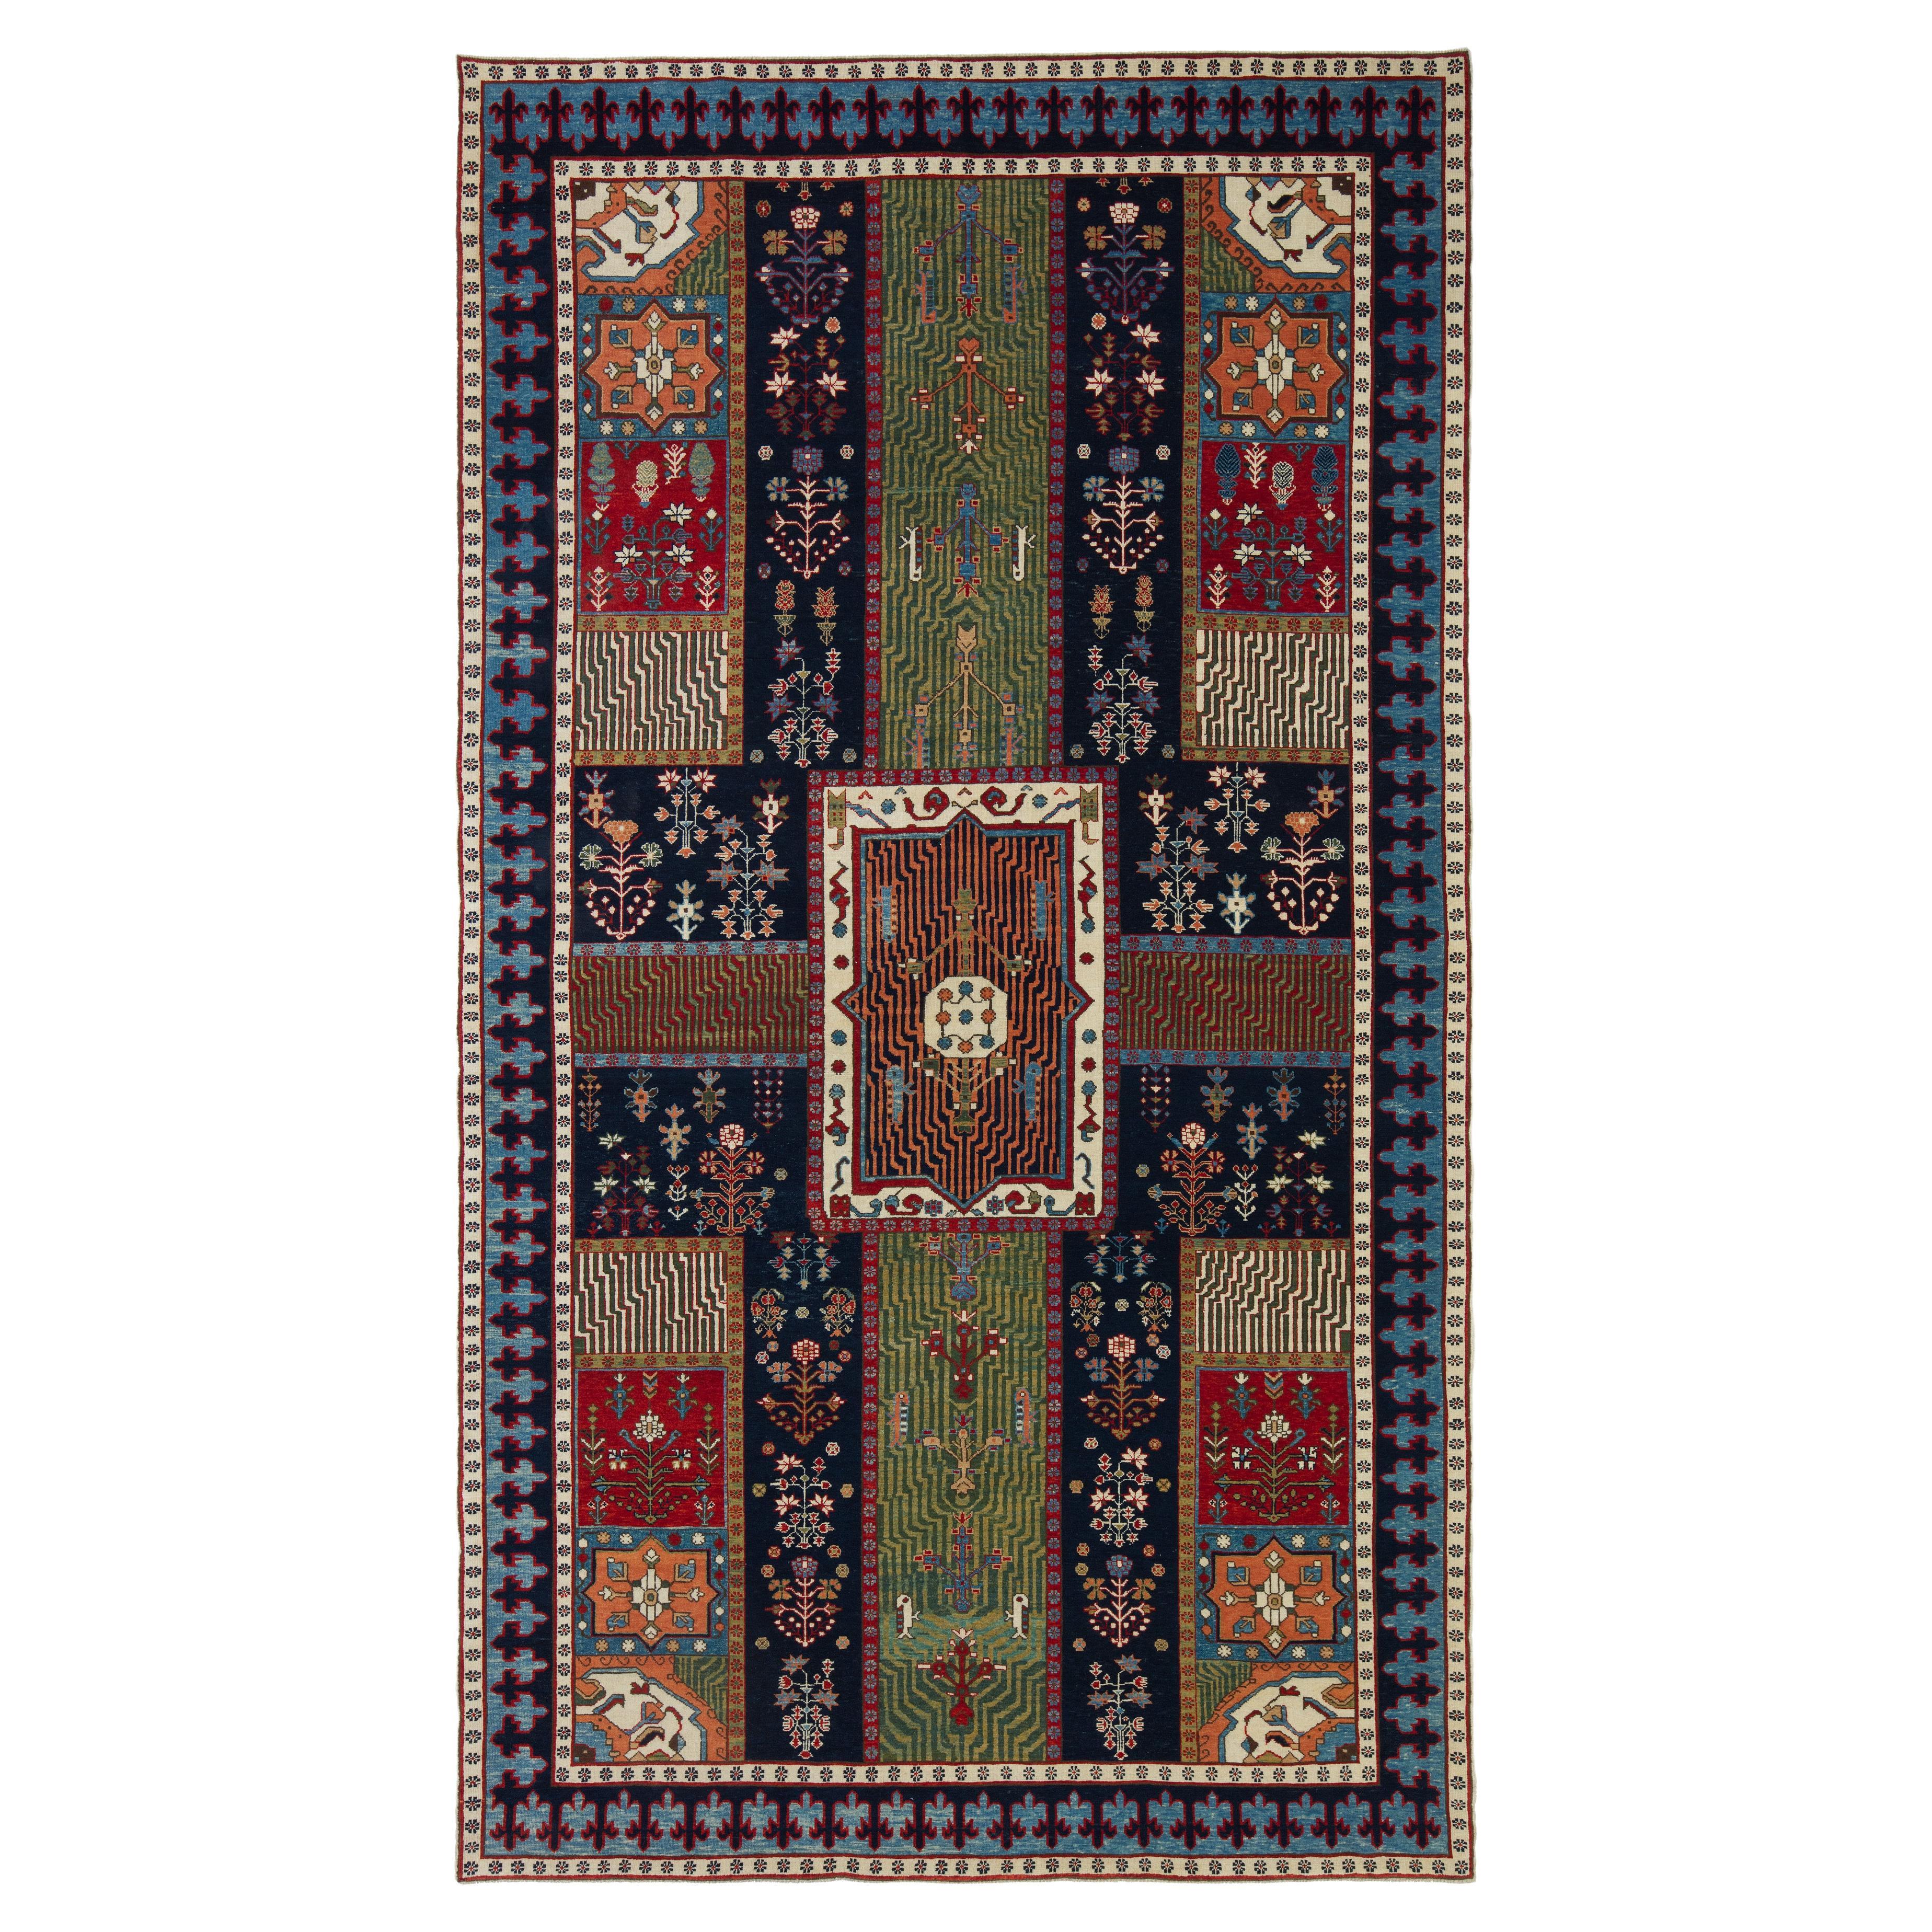 Ararat-Teppich Gartenteppich - Teppich im persischen Stil des 18. Jahrhunderts - Naturfarben